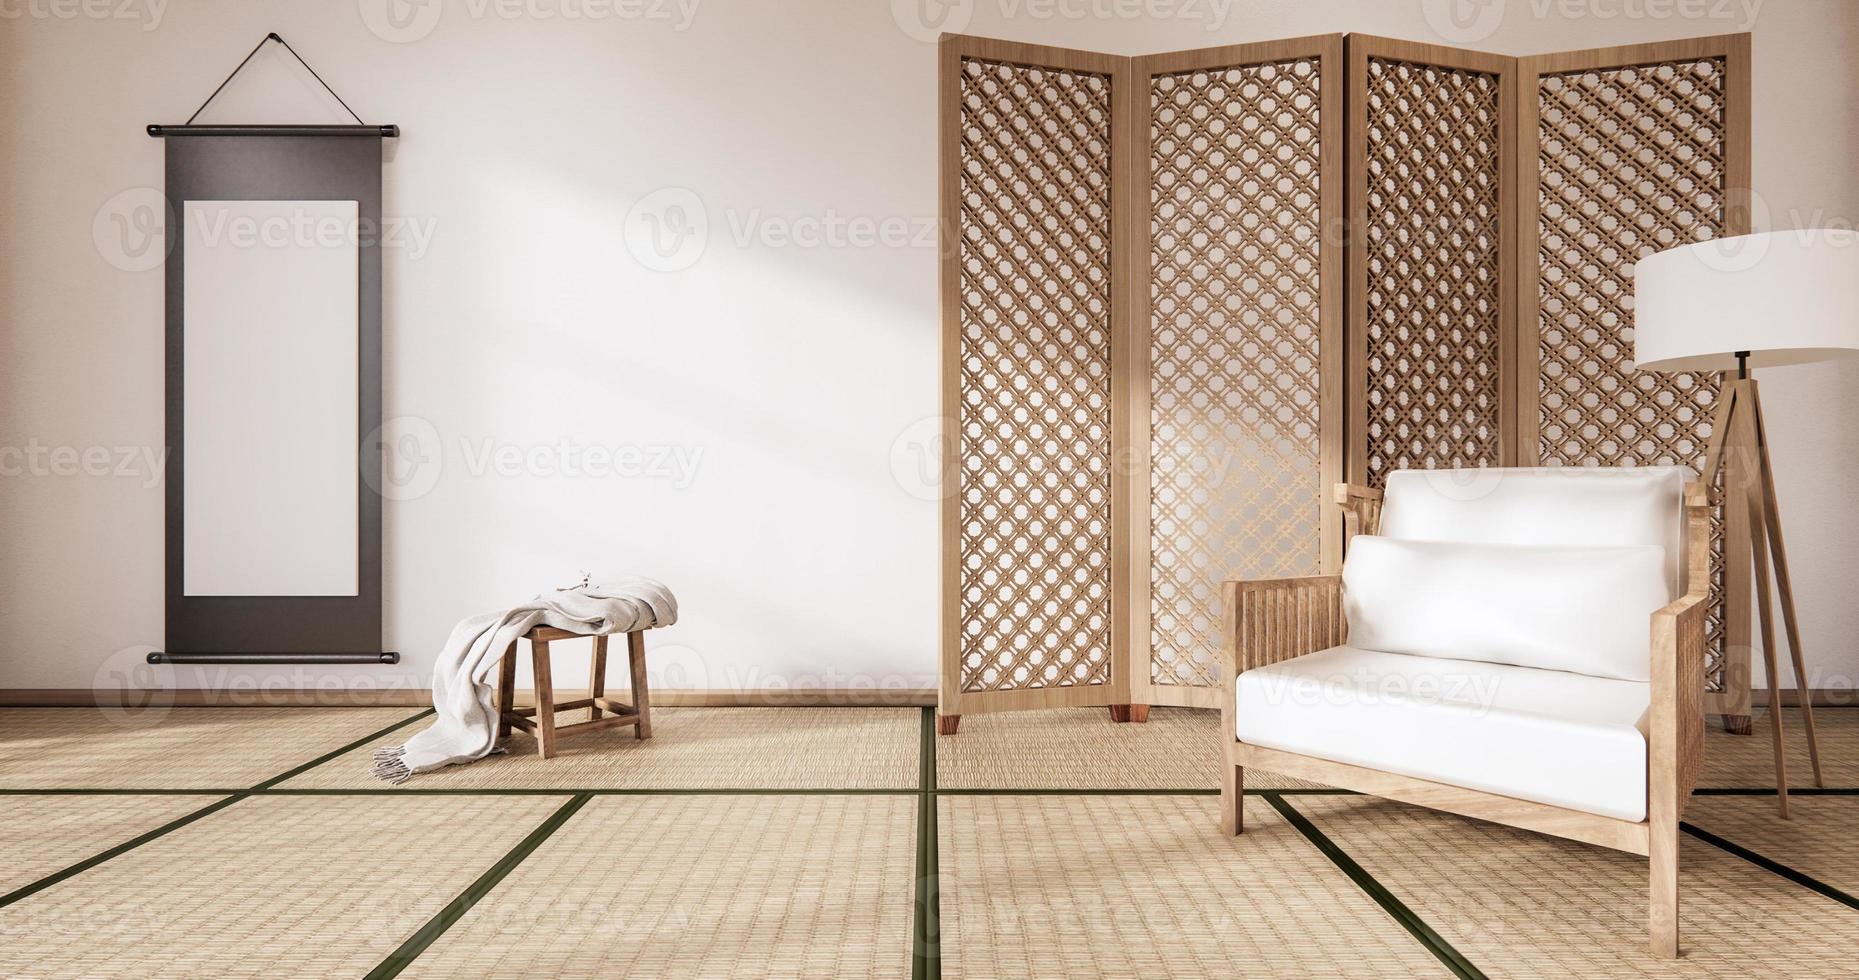 träfåtölj och skiljevägg japansk på rummet tropisk interiör med tatamimatta golv och vit vägg. 3D-rendering foto